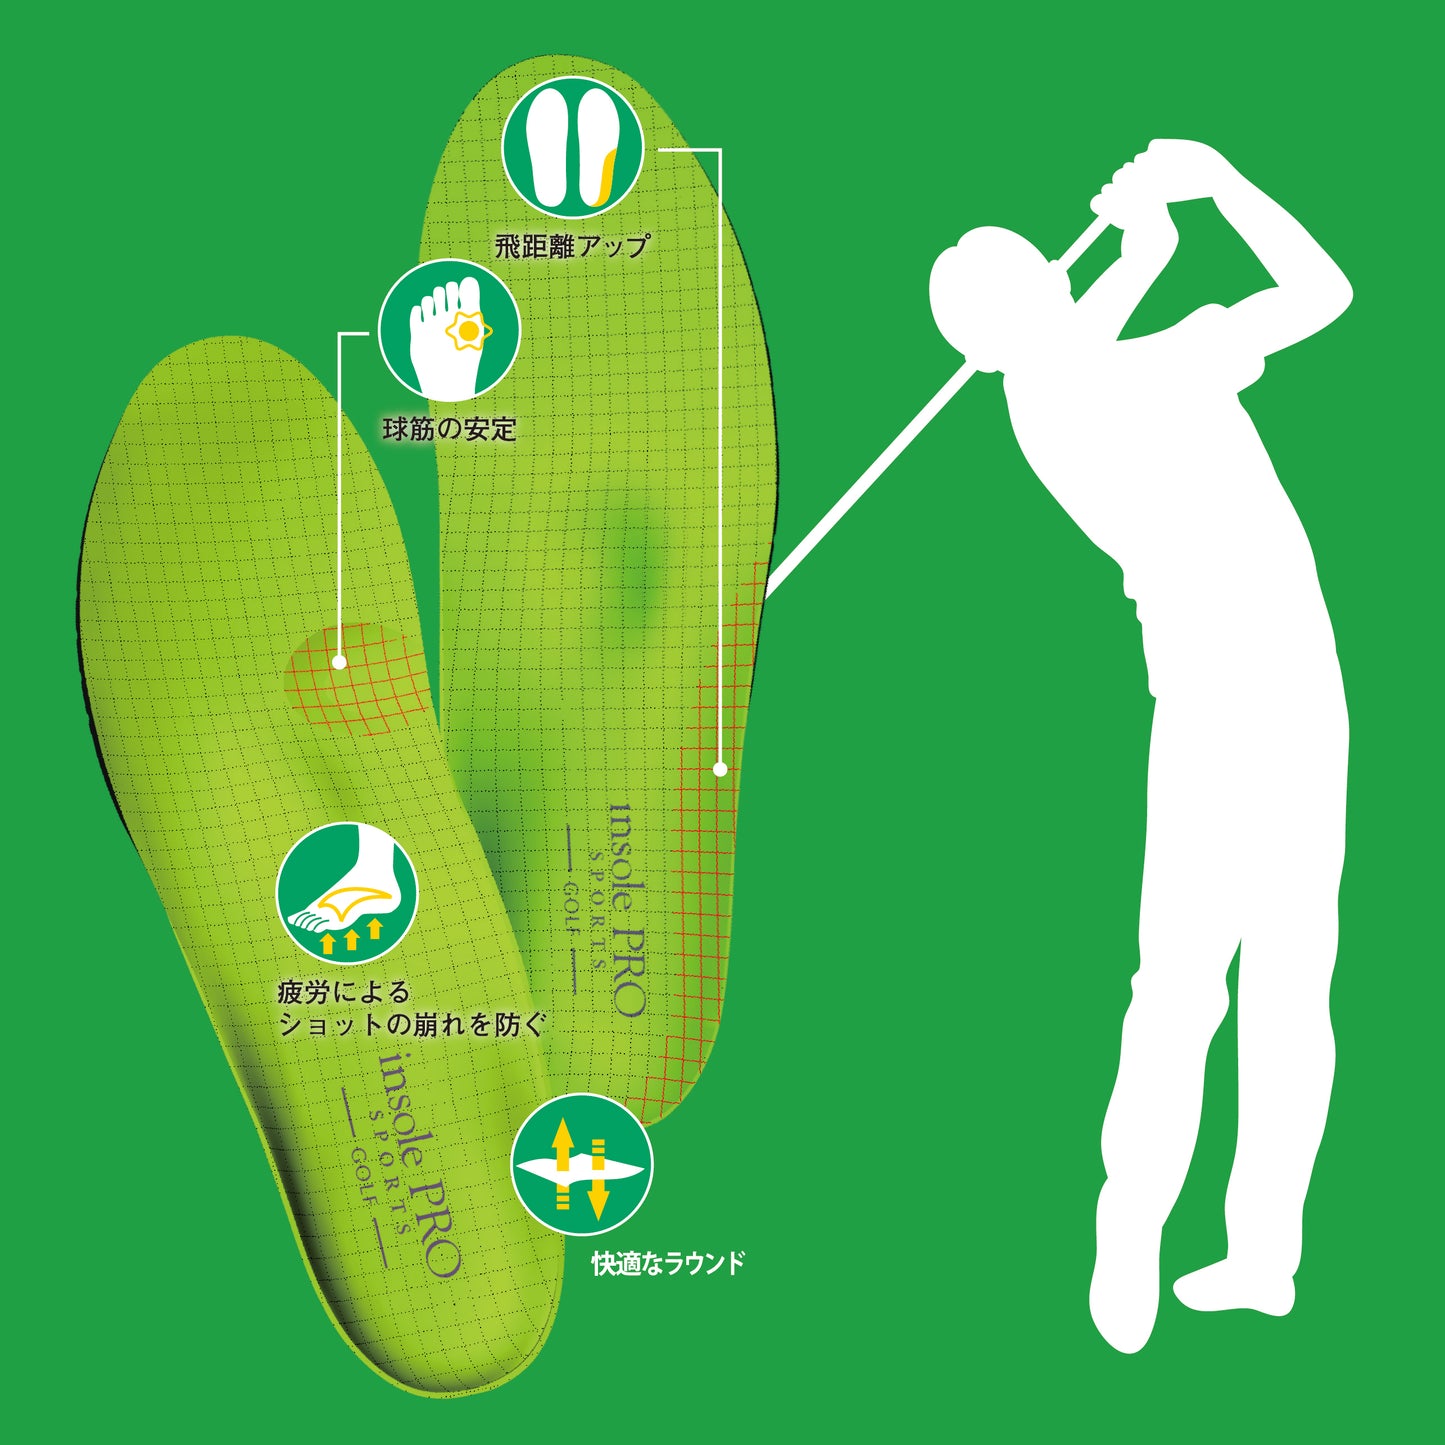 インソールプスポーツゴルフは「飛距離アップ」「球筋の安定」「疲労緩和」「ムレ防止」の4つの機能